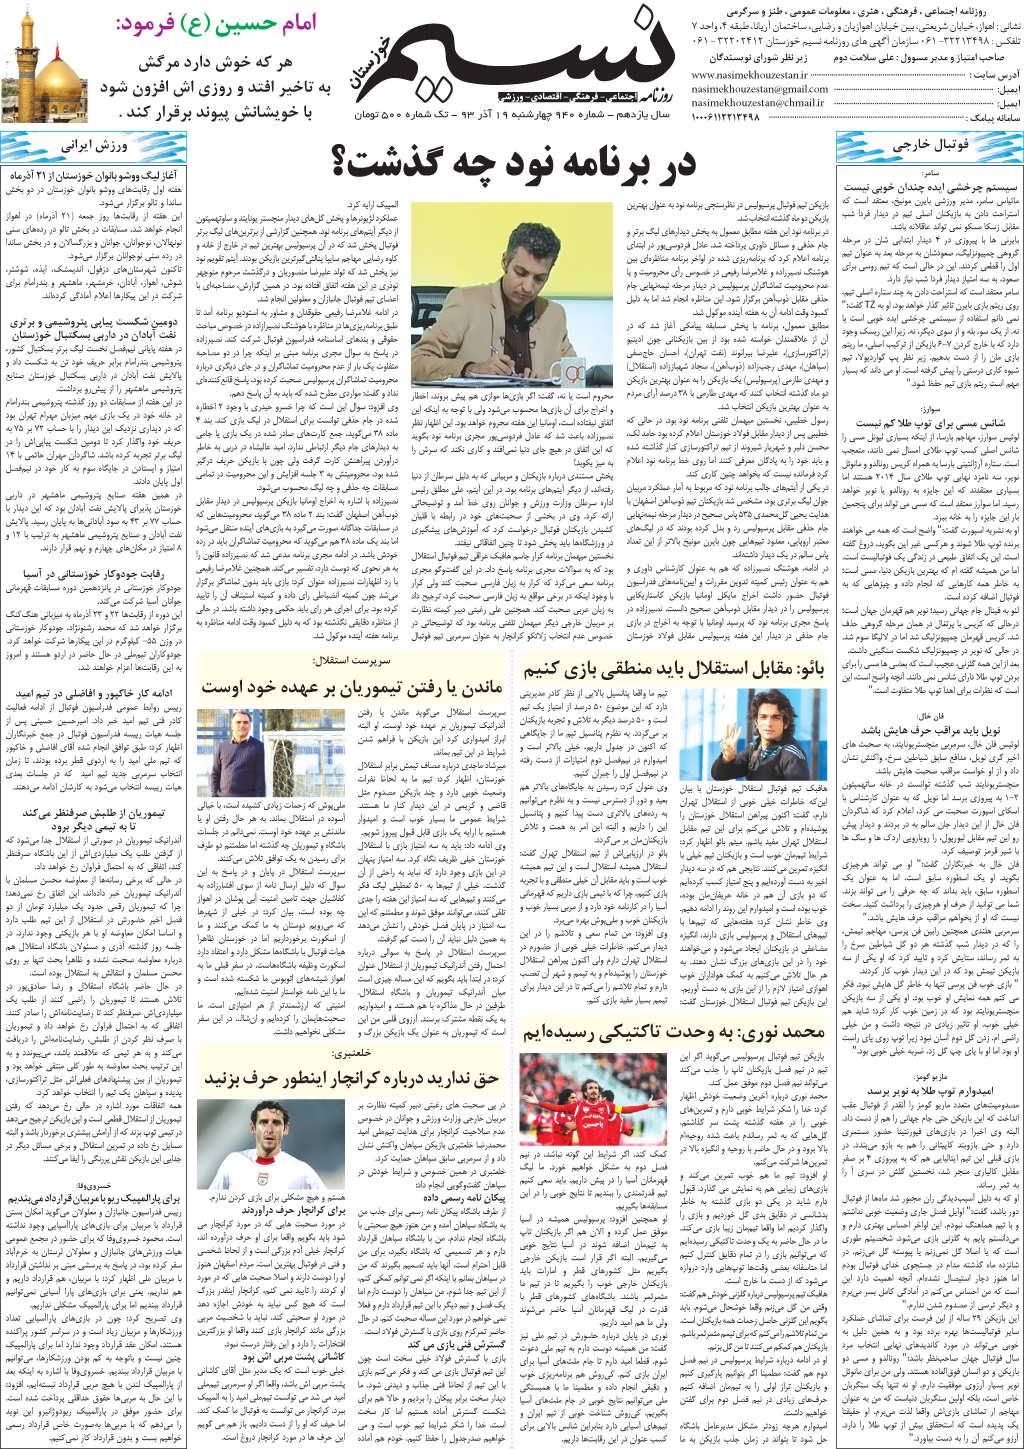 صفحه آخر روزنامه نسیم شماره 940